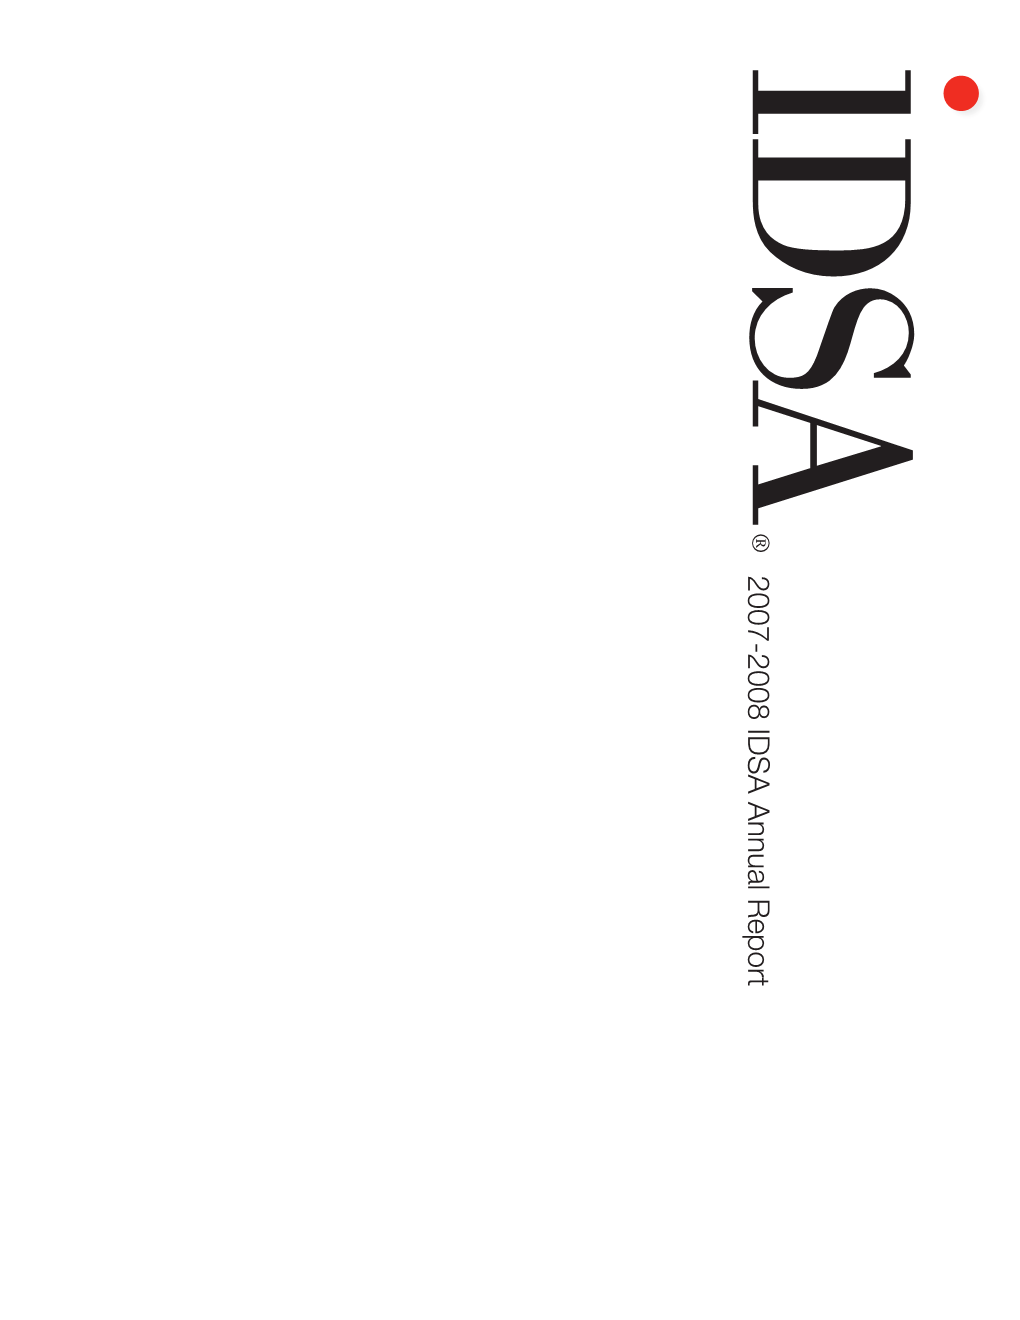 2007-2008 IDSA Annual Report